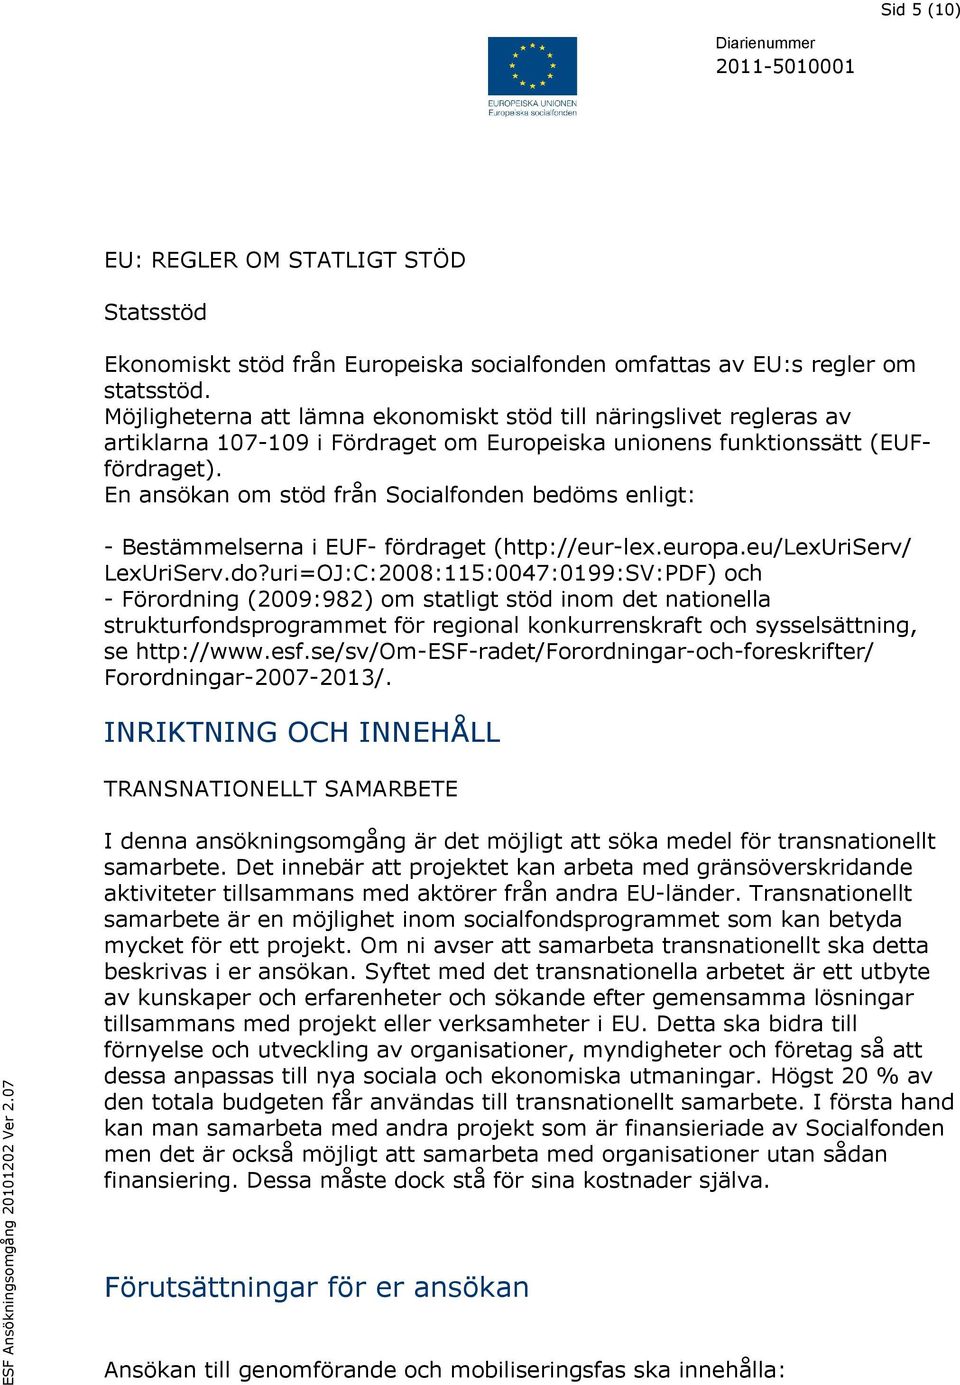 En ansökan om stöd från Socialfonden bedöms enligt: - Bestämmelserna i EUF- fördraget (http://eur-lex.europa.eu/lexuriserv/ LexUriServ.do?